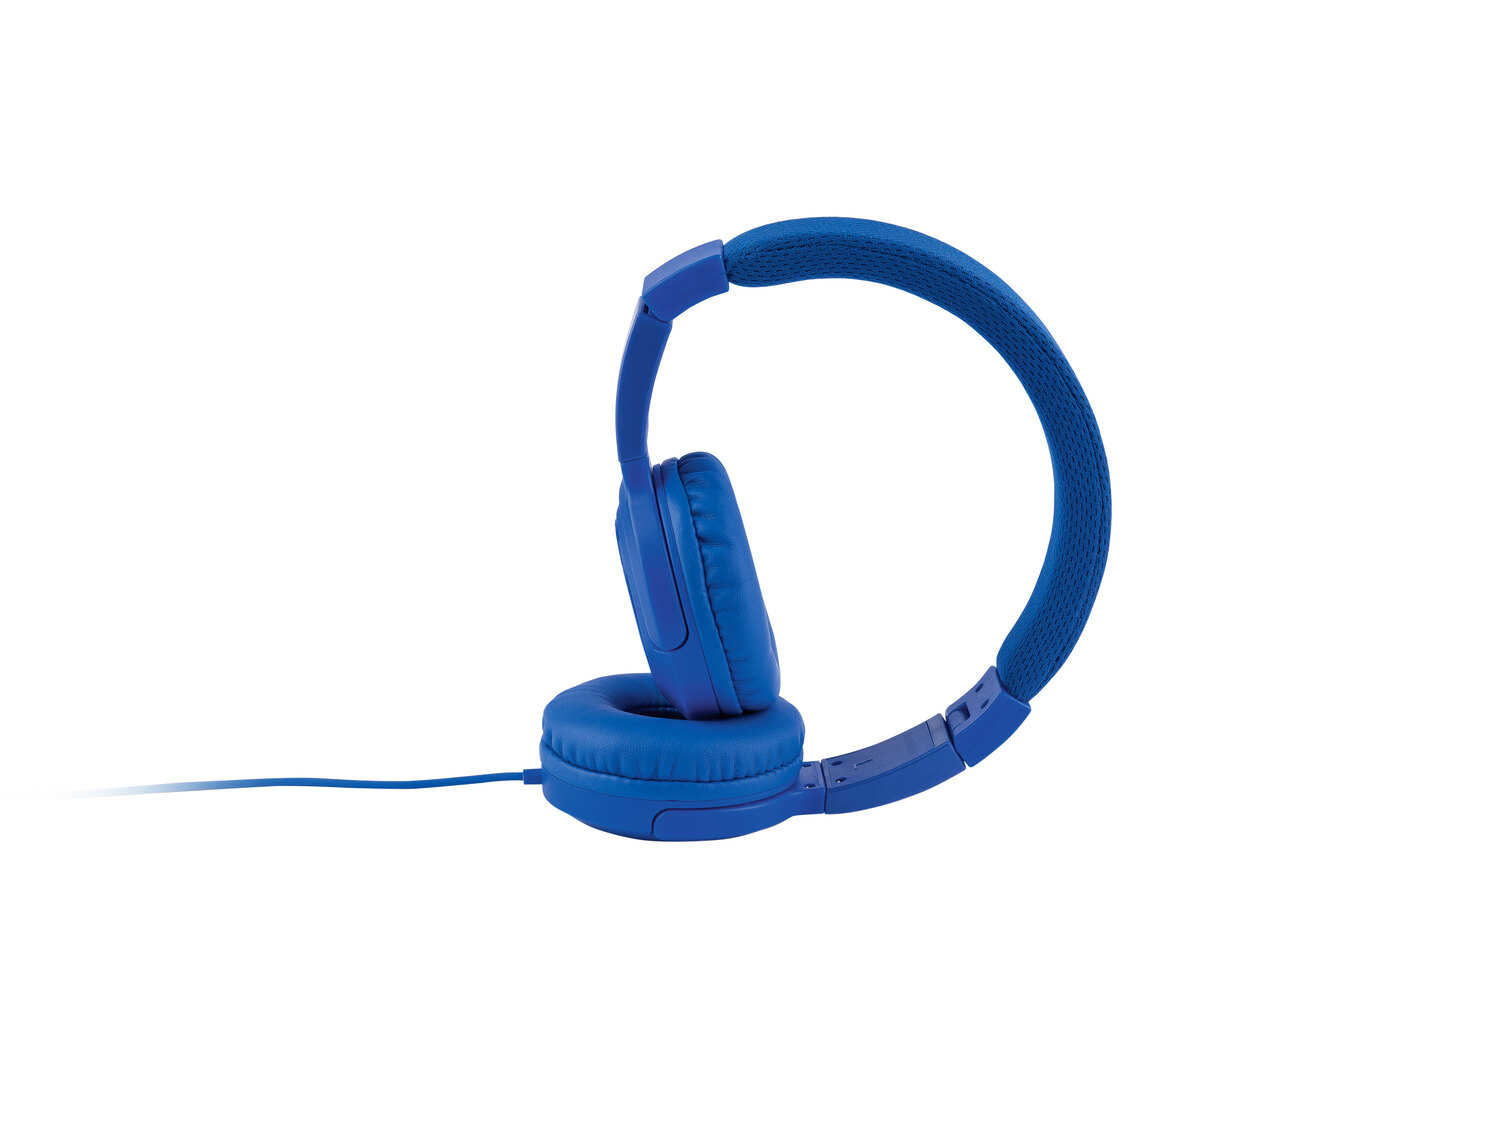 Słuchawki nauszne z funkcją mikrofonu Silvercrest, cena 29,99 PLN 
- wejście ...